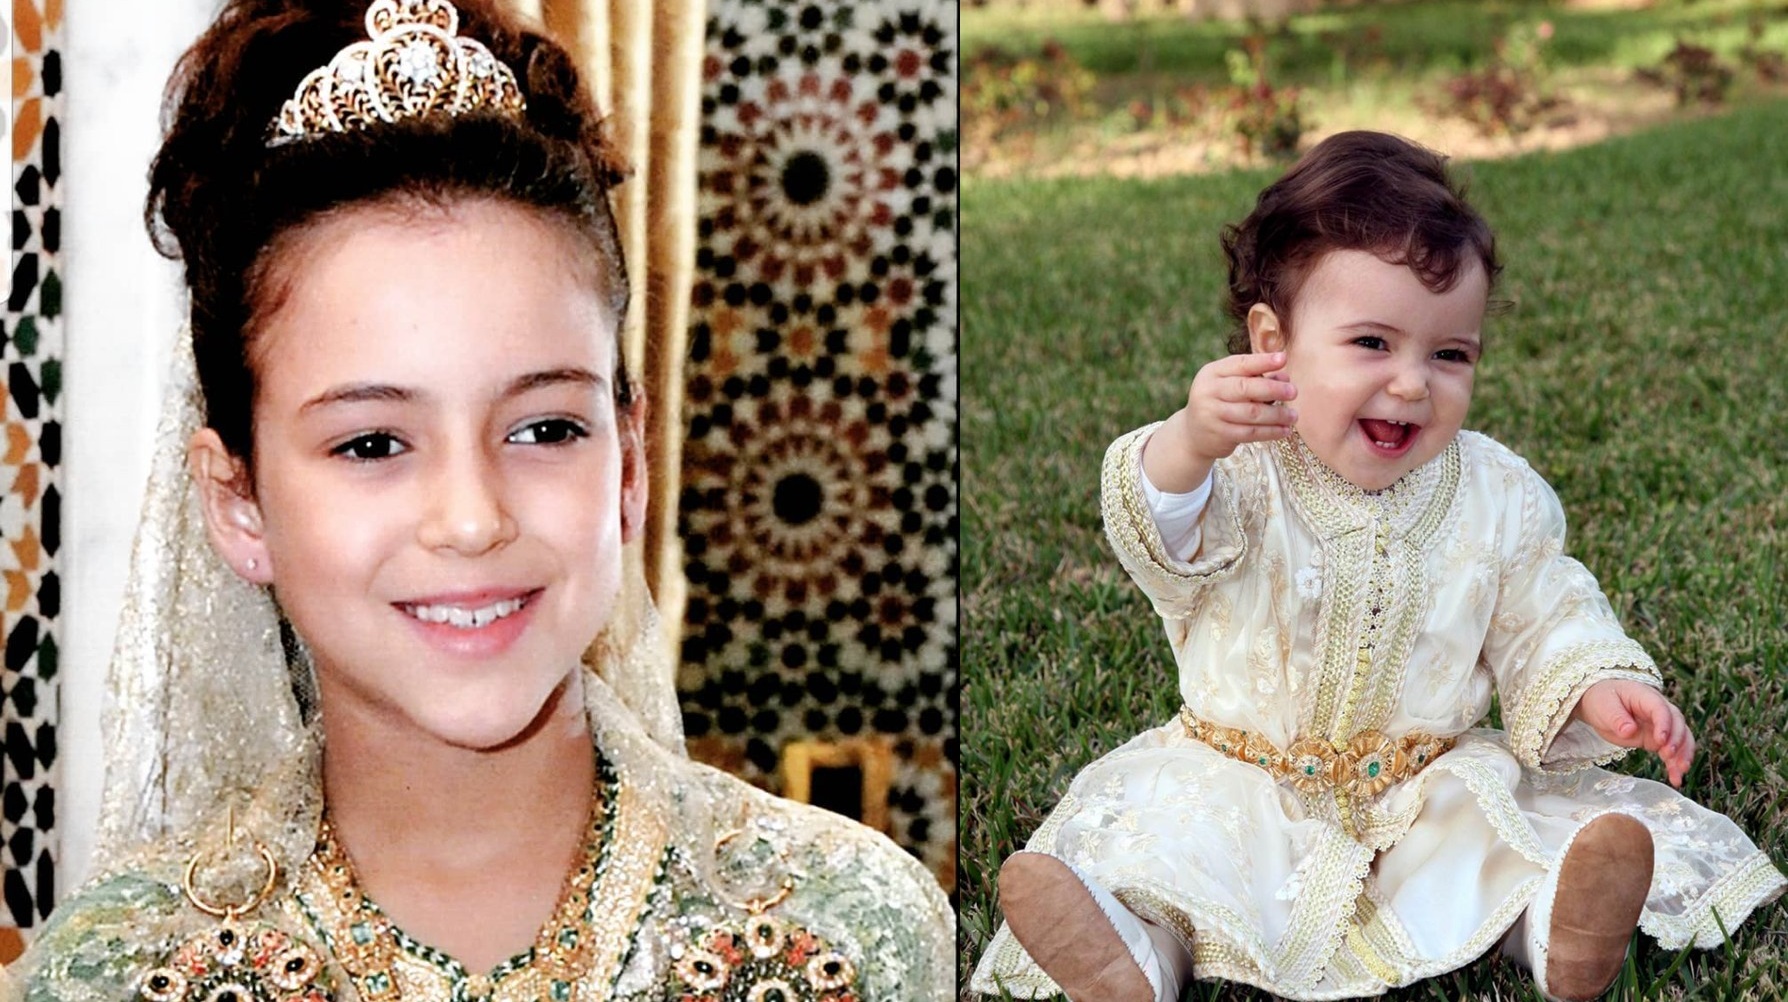 في مثل هذا اليوم ازدان القصر الملكي بولادة الأميرة لالة خديجة...اليكم نبذة عن حياتها منذ الولادة